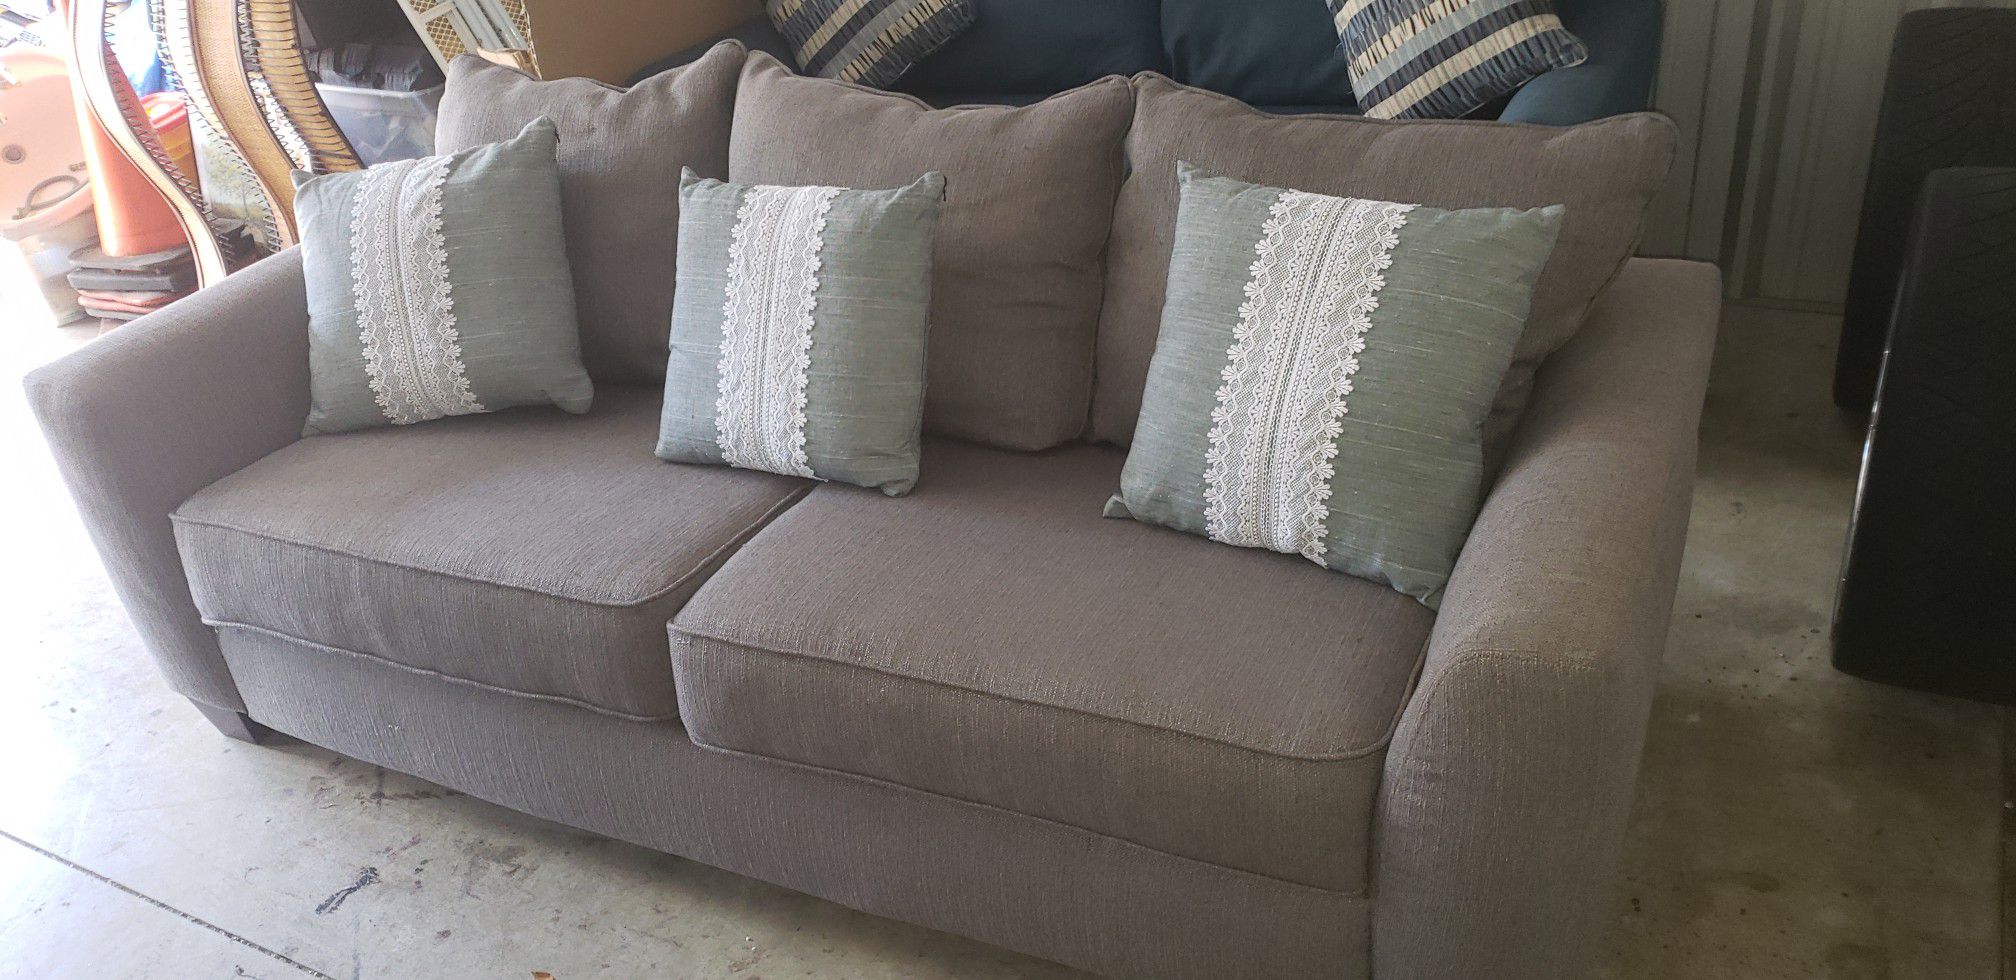 Gray cloth sofa clean